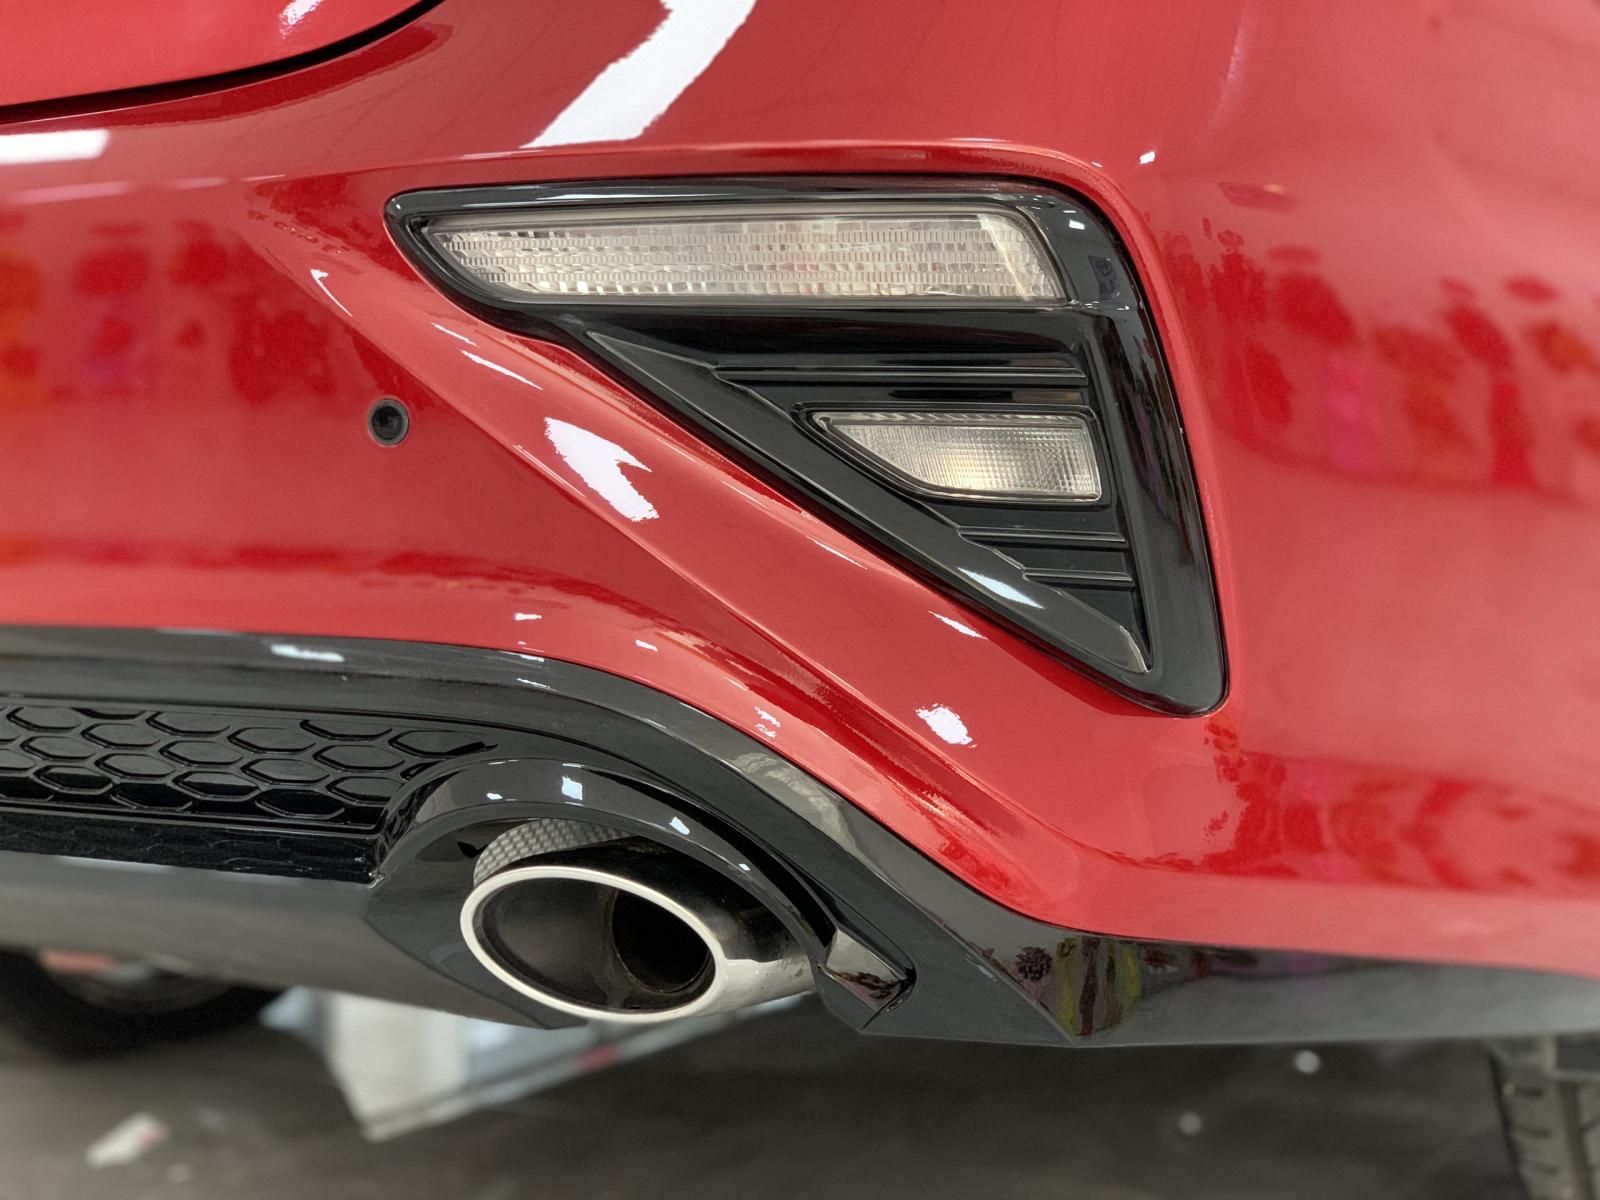 Kia Cerato 2019 - Full đồ chơi không 1 lỗi nhỏ. Giao xe tại nhà, check xe theo yêu cầu, giá tốt nhất Bình Dương